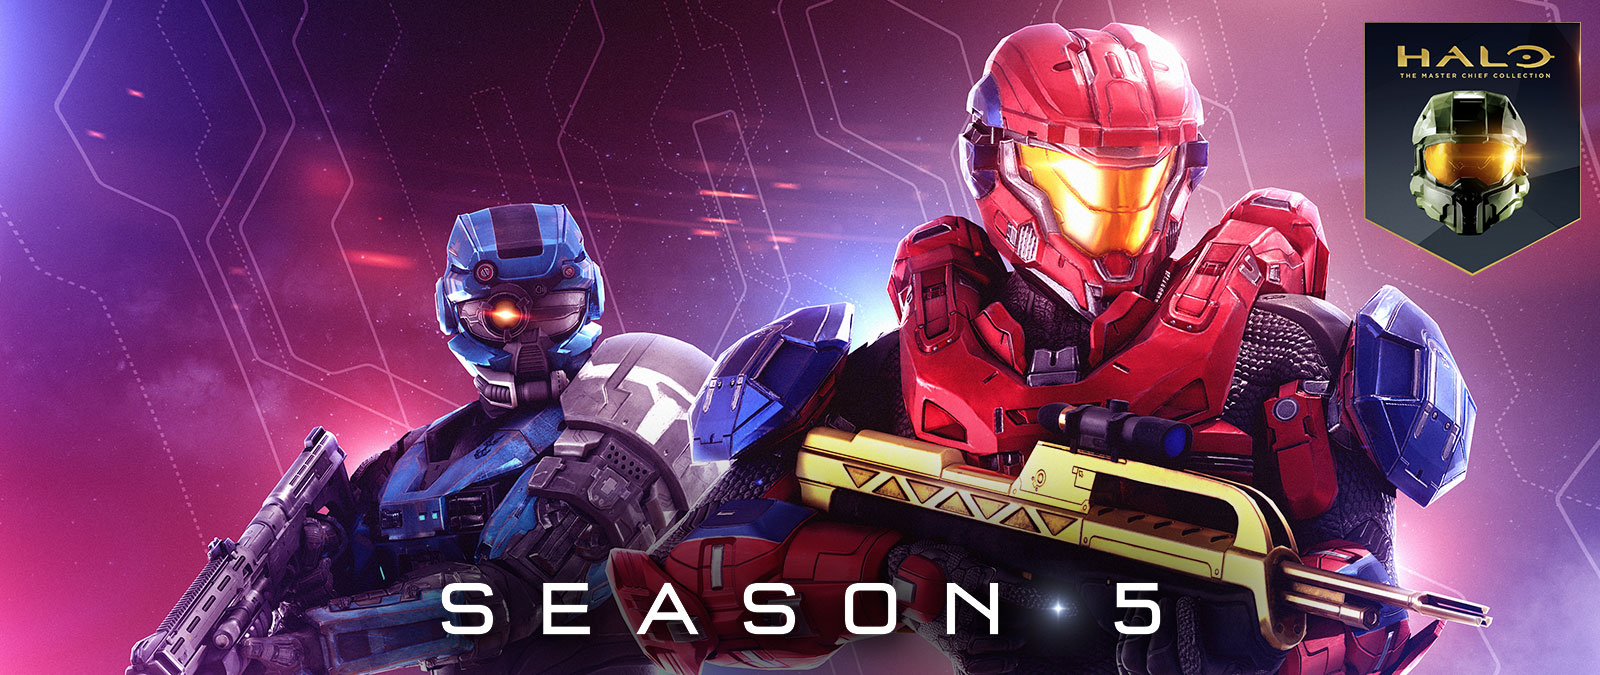 Halo: The Master Chief Collection, Saison 5, Un Spartan rouge tient un fusil de combat doré tandis qu’un Spartan bleu porte un casque spécial, doté d’un seul œil